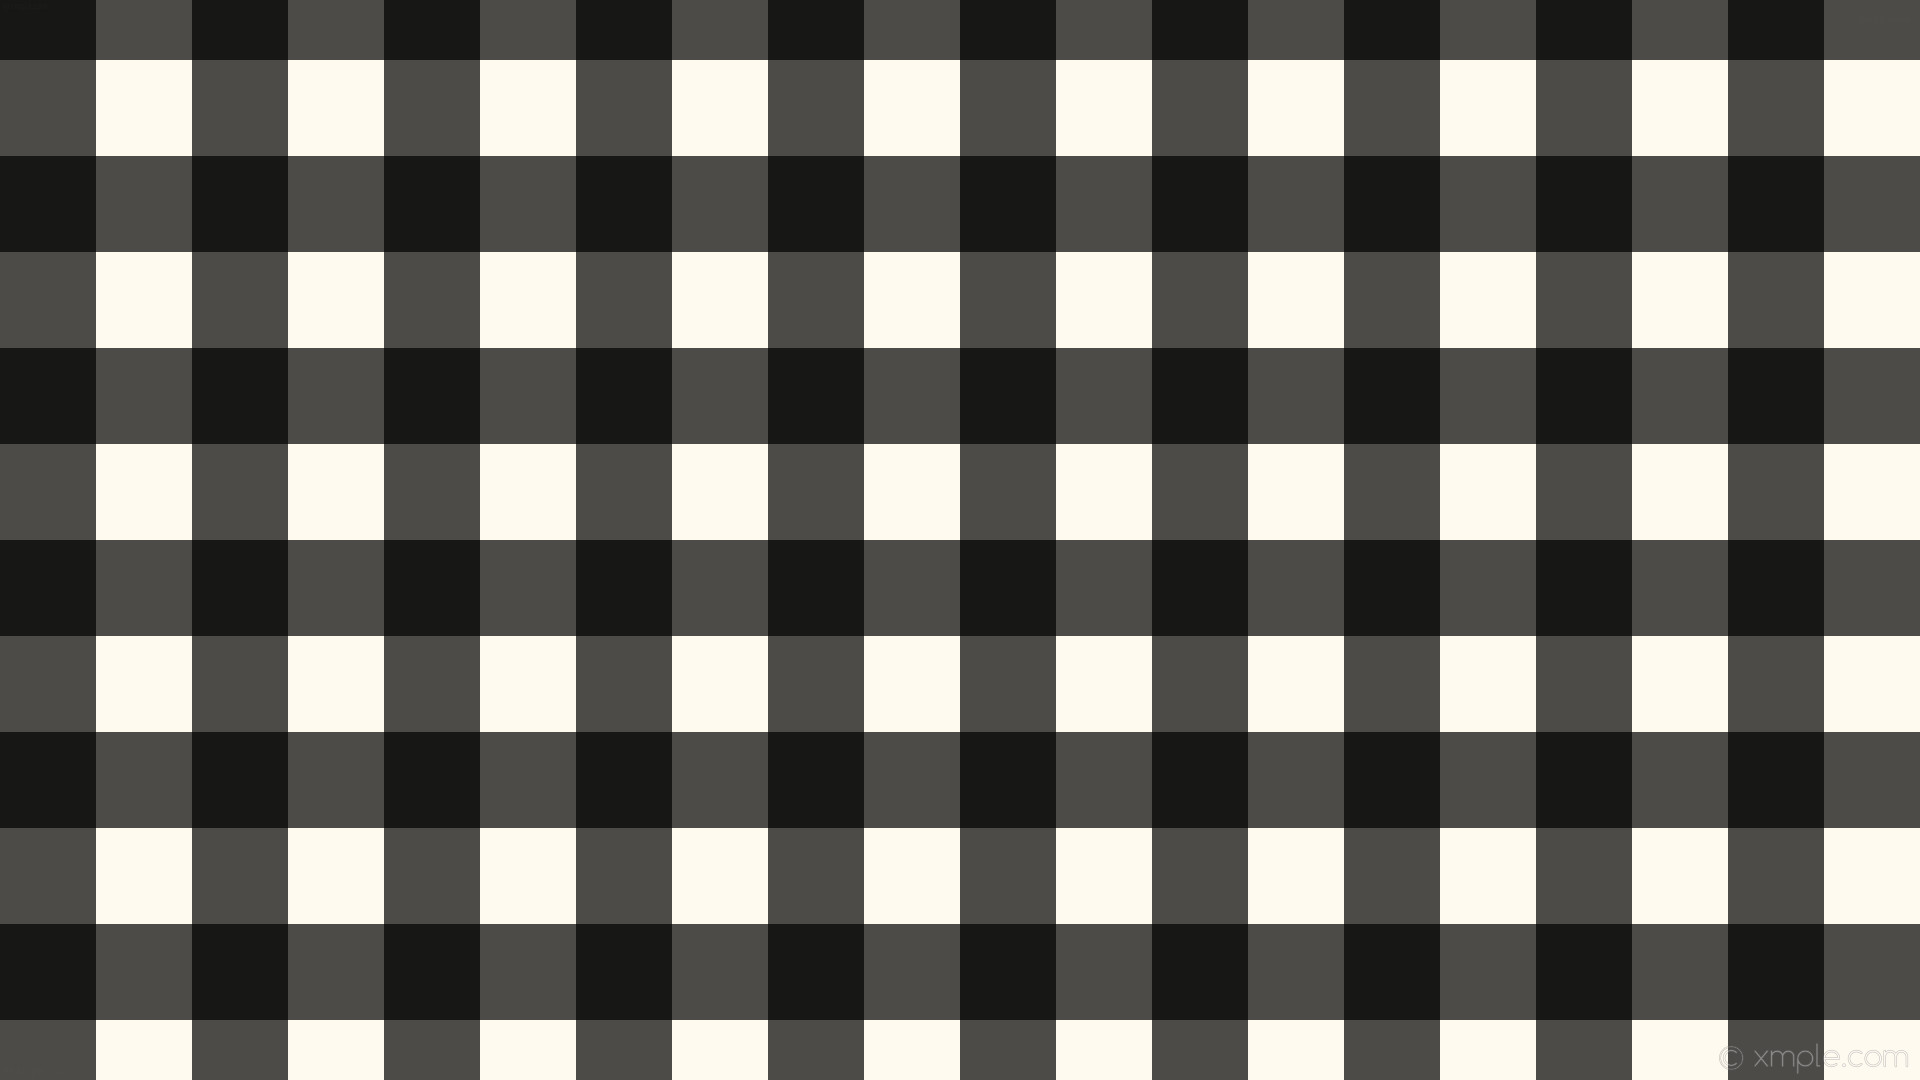 1920x1080 wallpaper checker striped gingham black white floral white #fffaf0 #000000  0Â° 96px